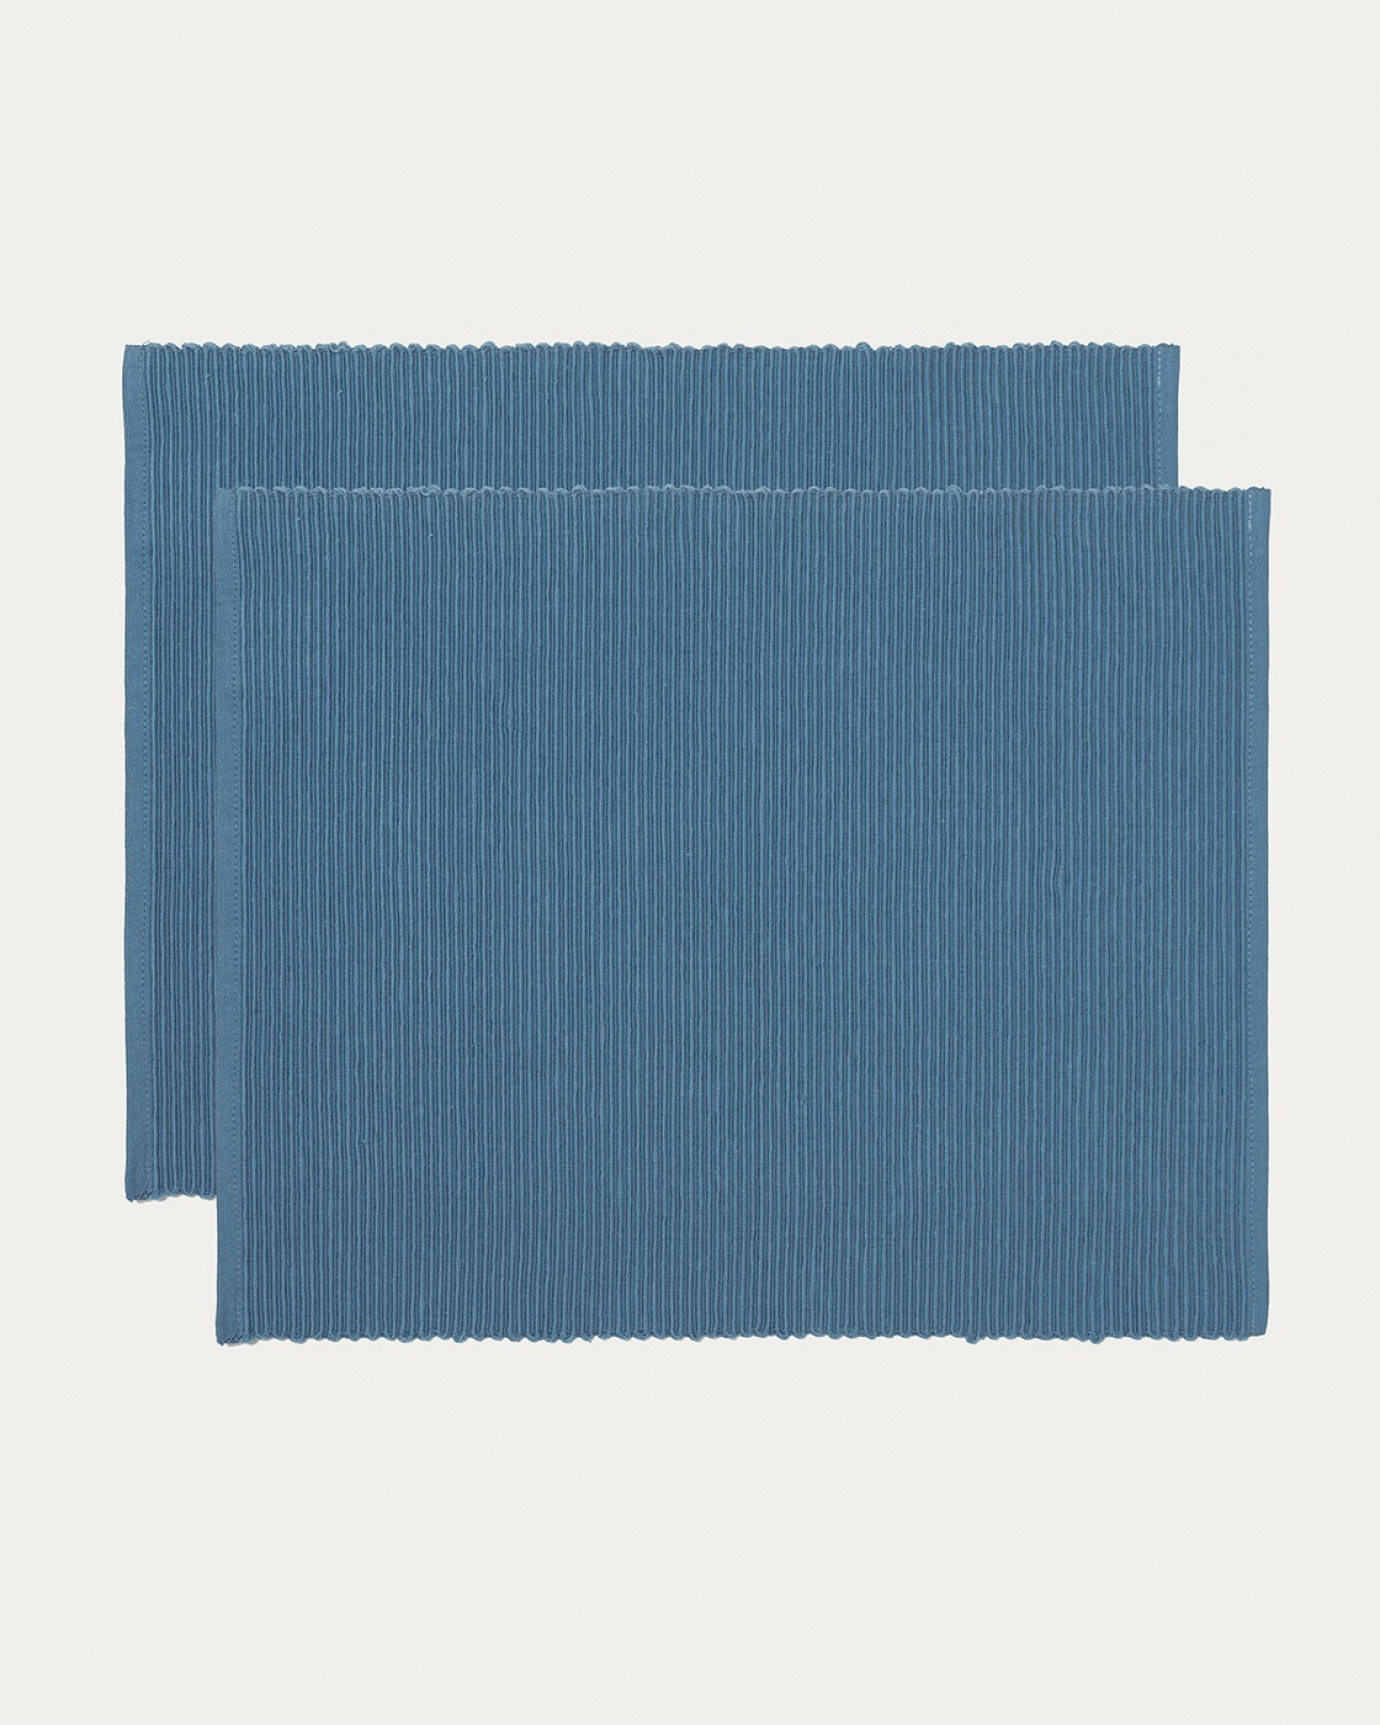 Produktbild djup havsblå UNI bordstablett av mjuk bomull i ribbad kvalité från LINUM DESIGN. Storlek 35x46 cm och säljs i 2-pack.